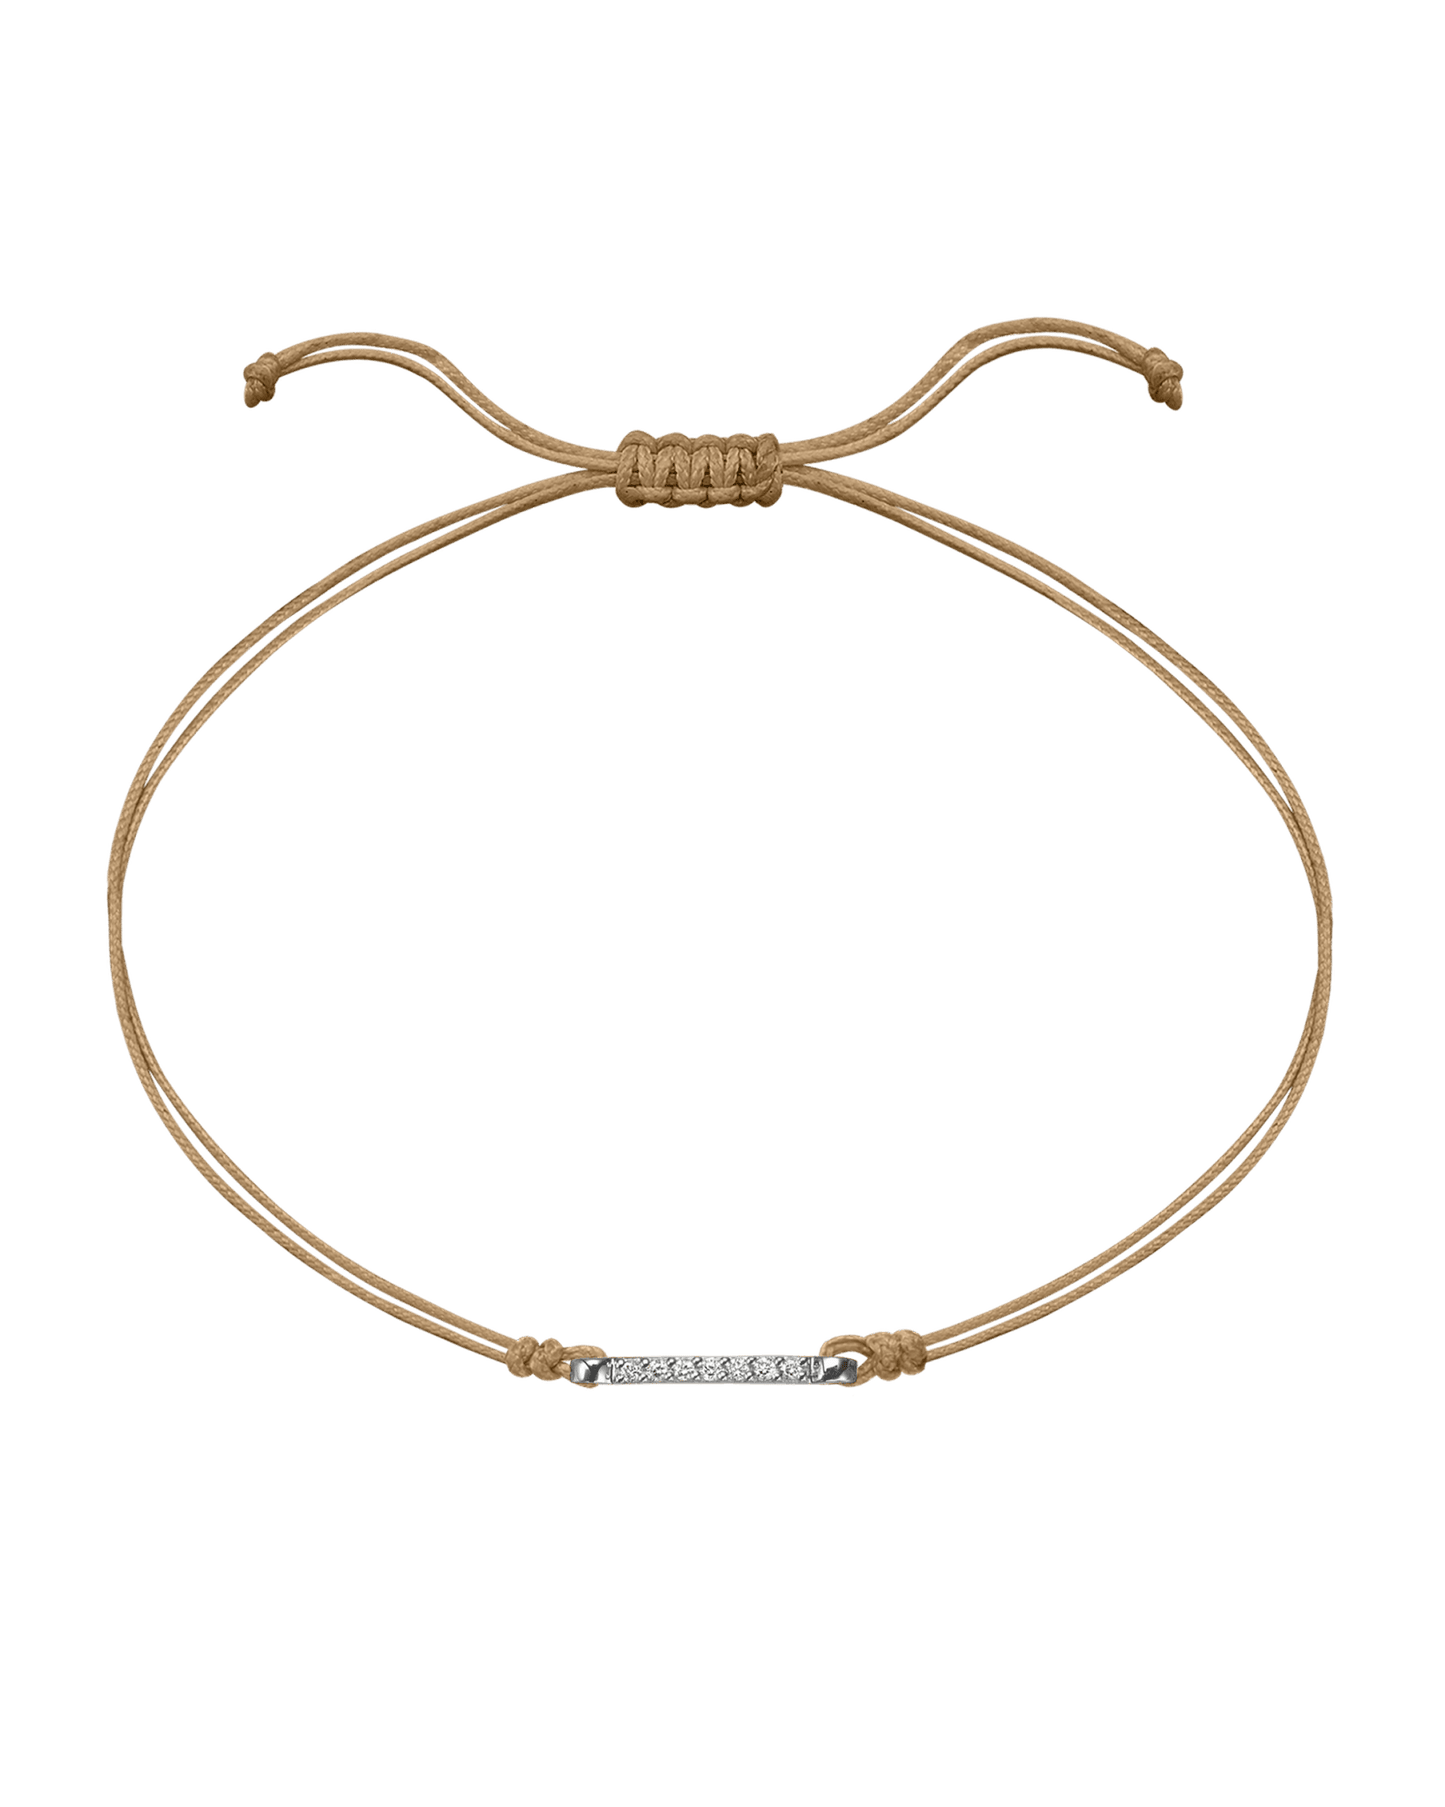 The Diamond Bar String Of Love - 14K White Gold Bracelet 14K Solid Gold Camel 